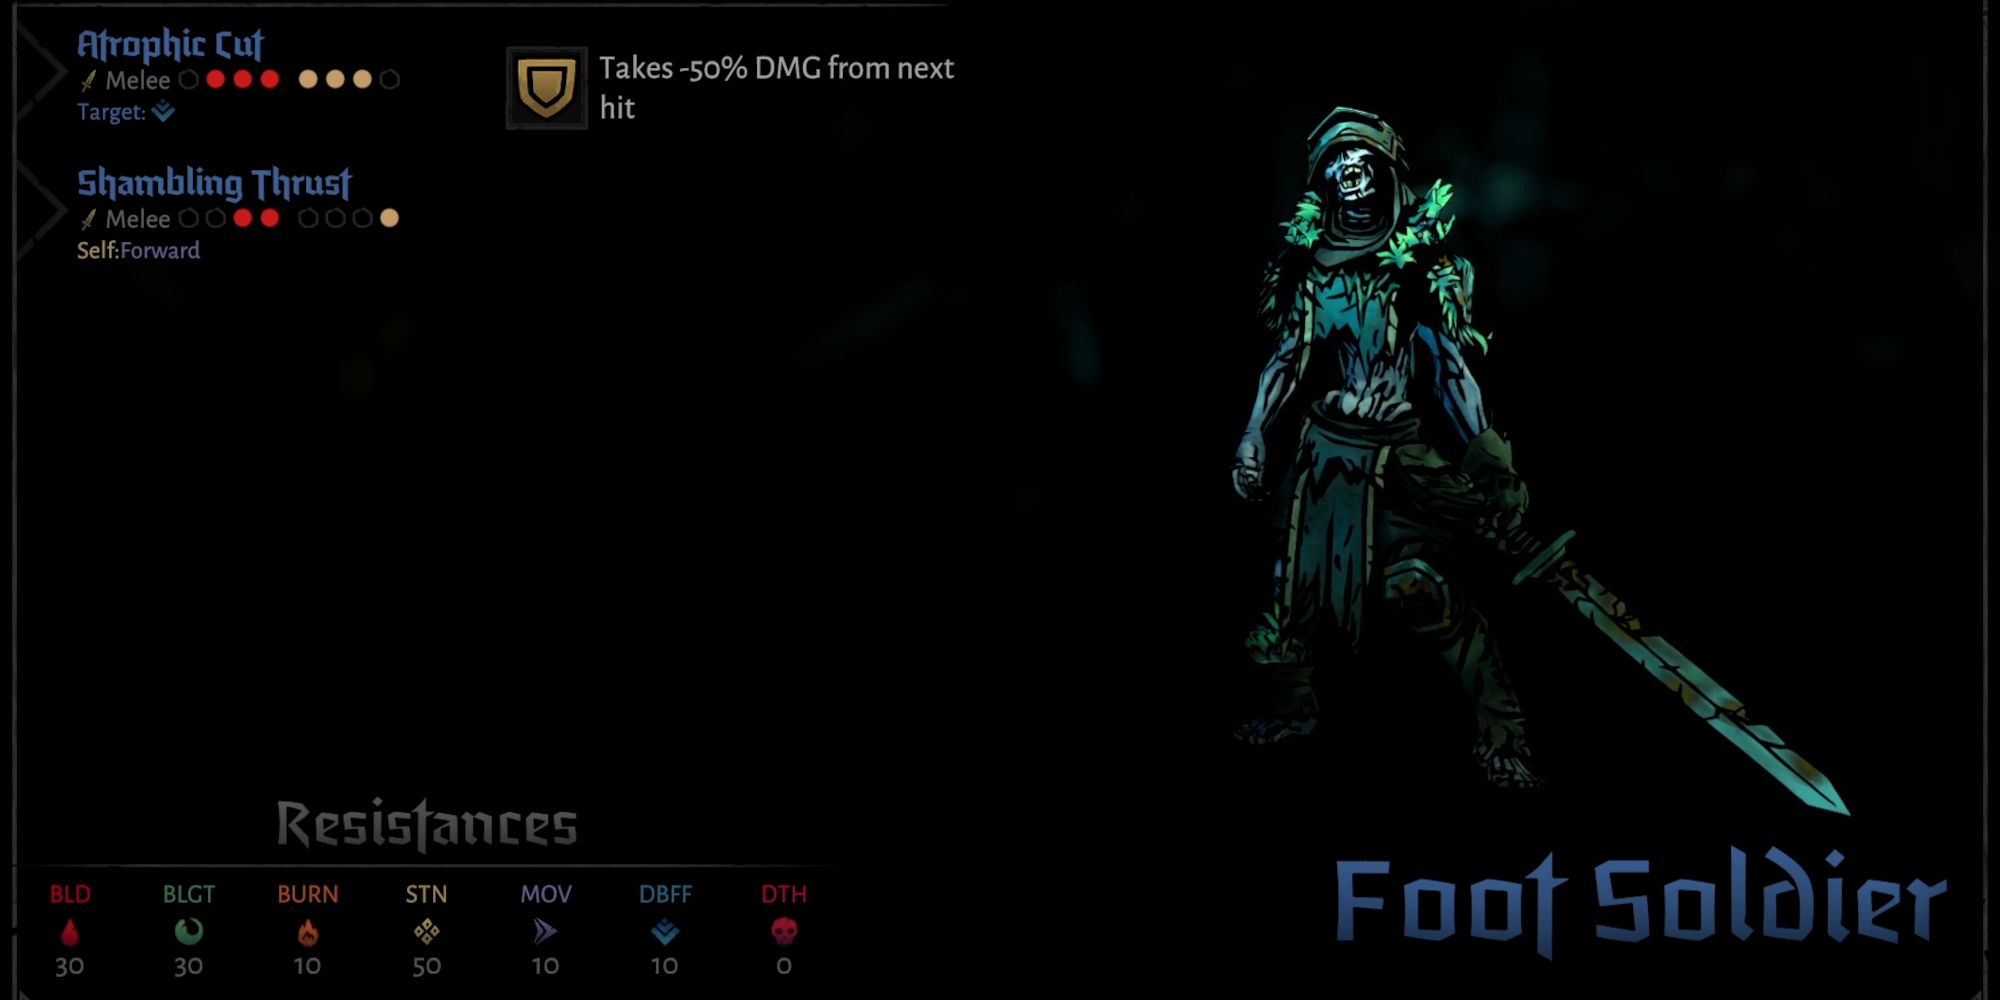 Foot Soldier in-game Darkest Dungeon 2 on menu screen